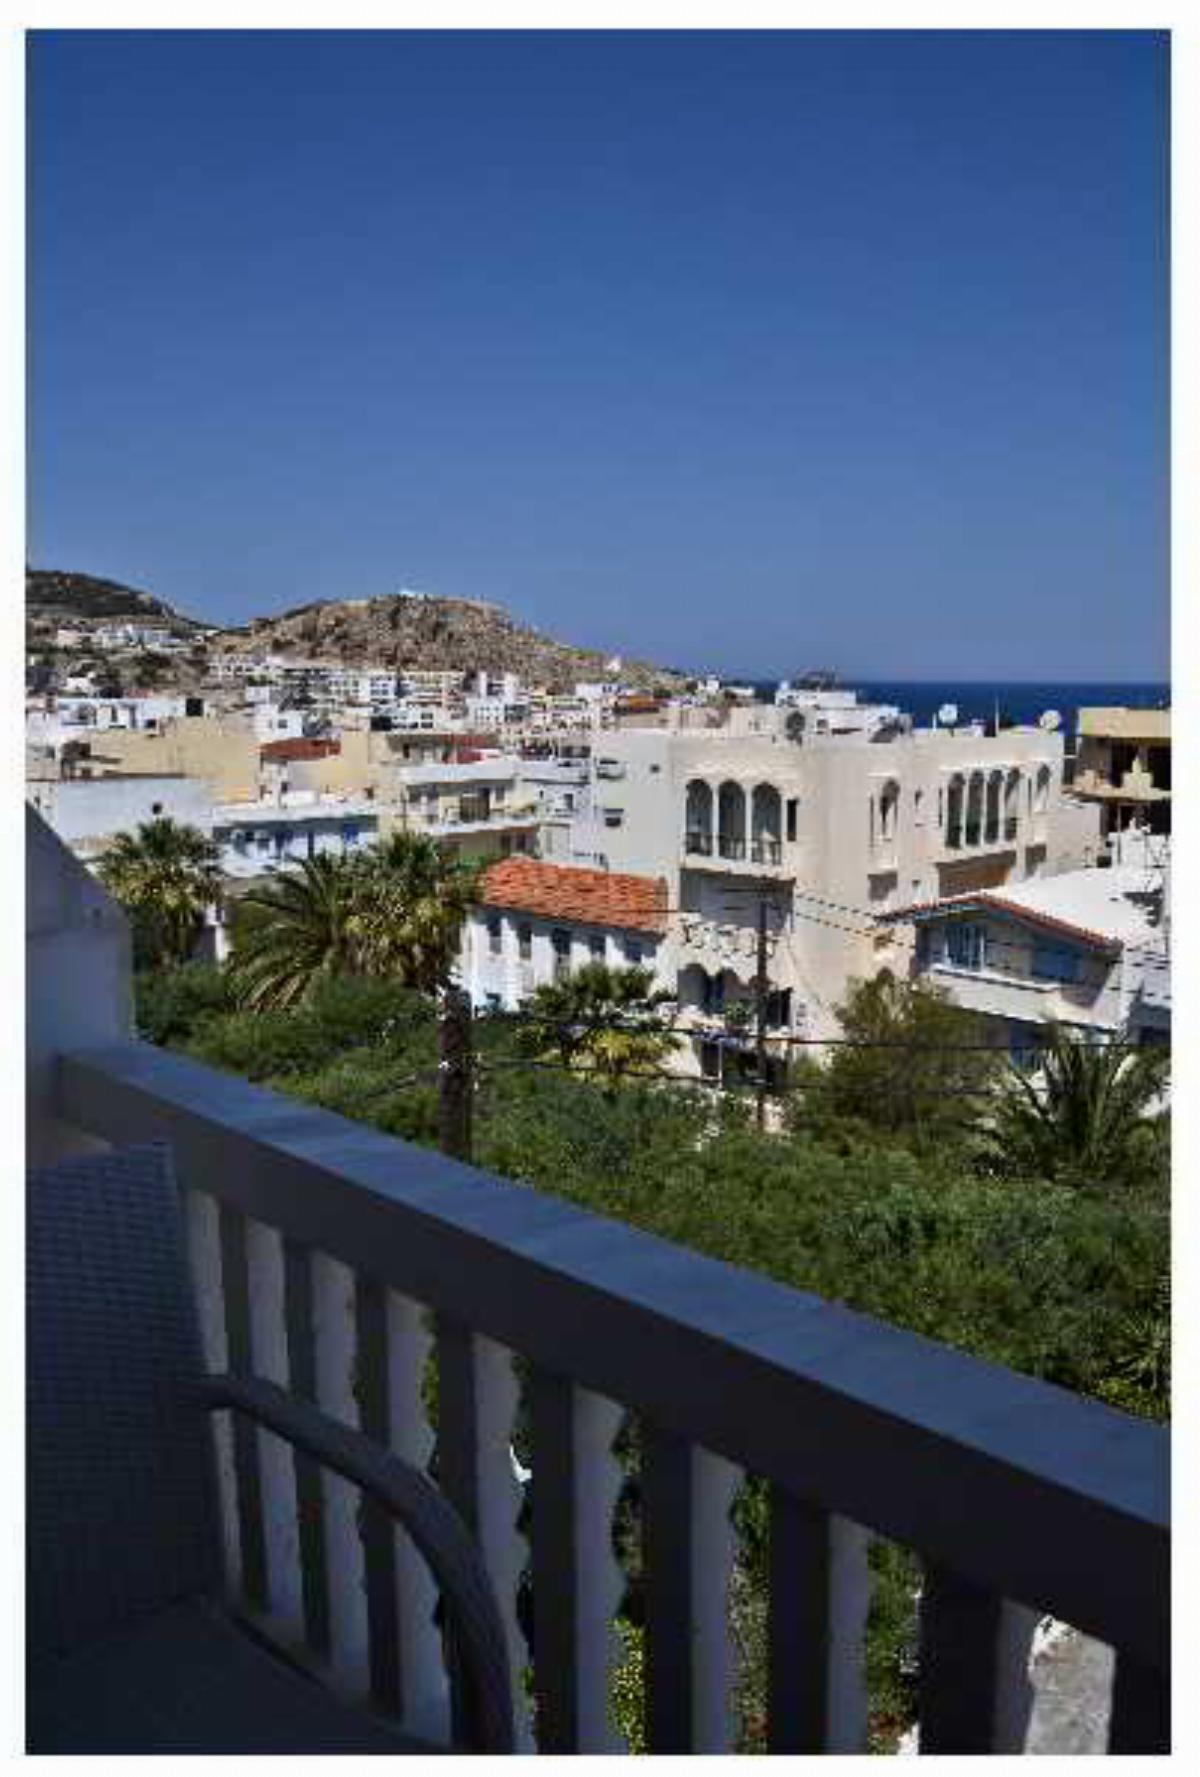 Oceanis Hotel Karpathos Greece